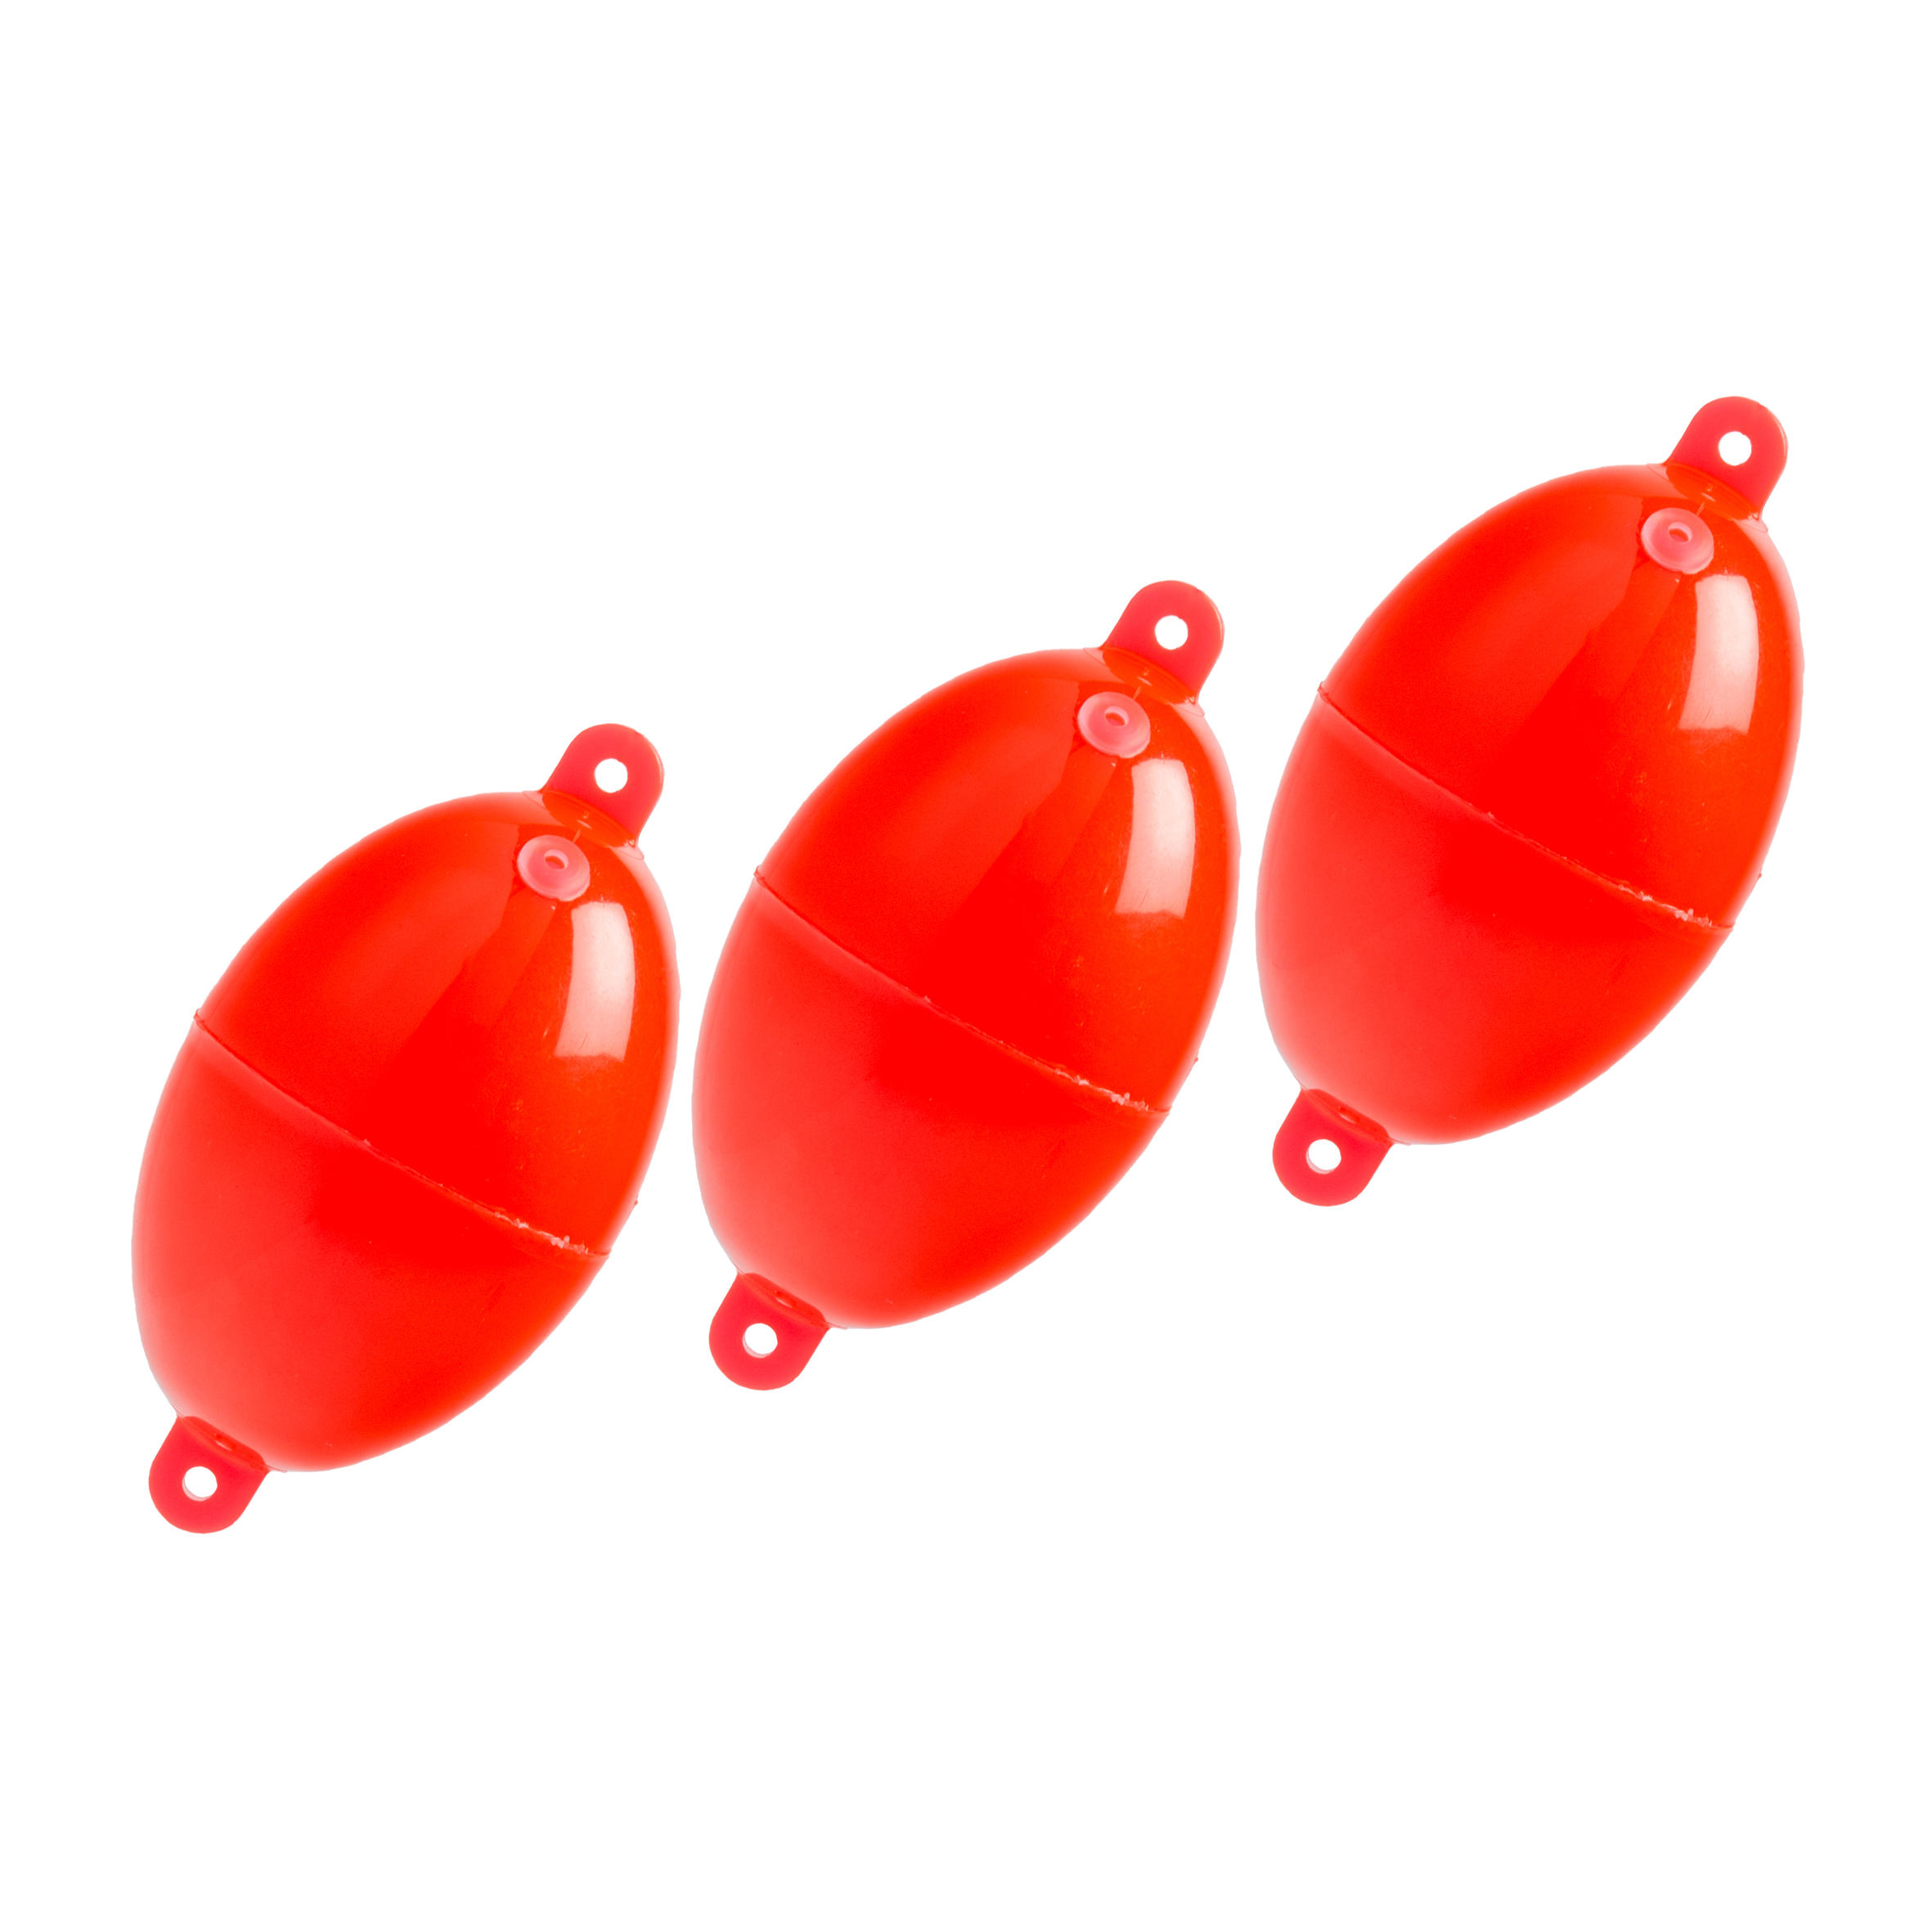 Oval Buldo N°4 x3 sea fishing bubble float red 1/3